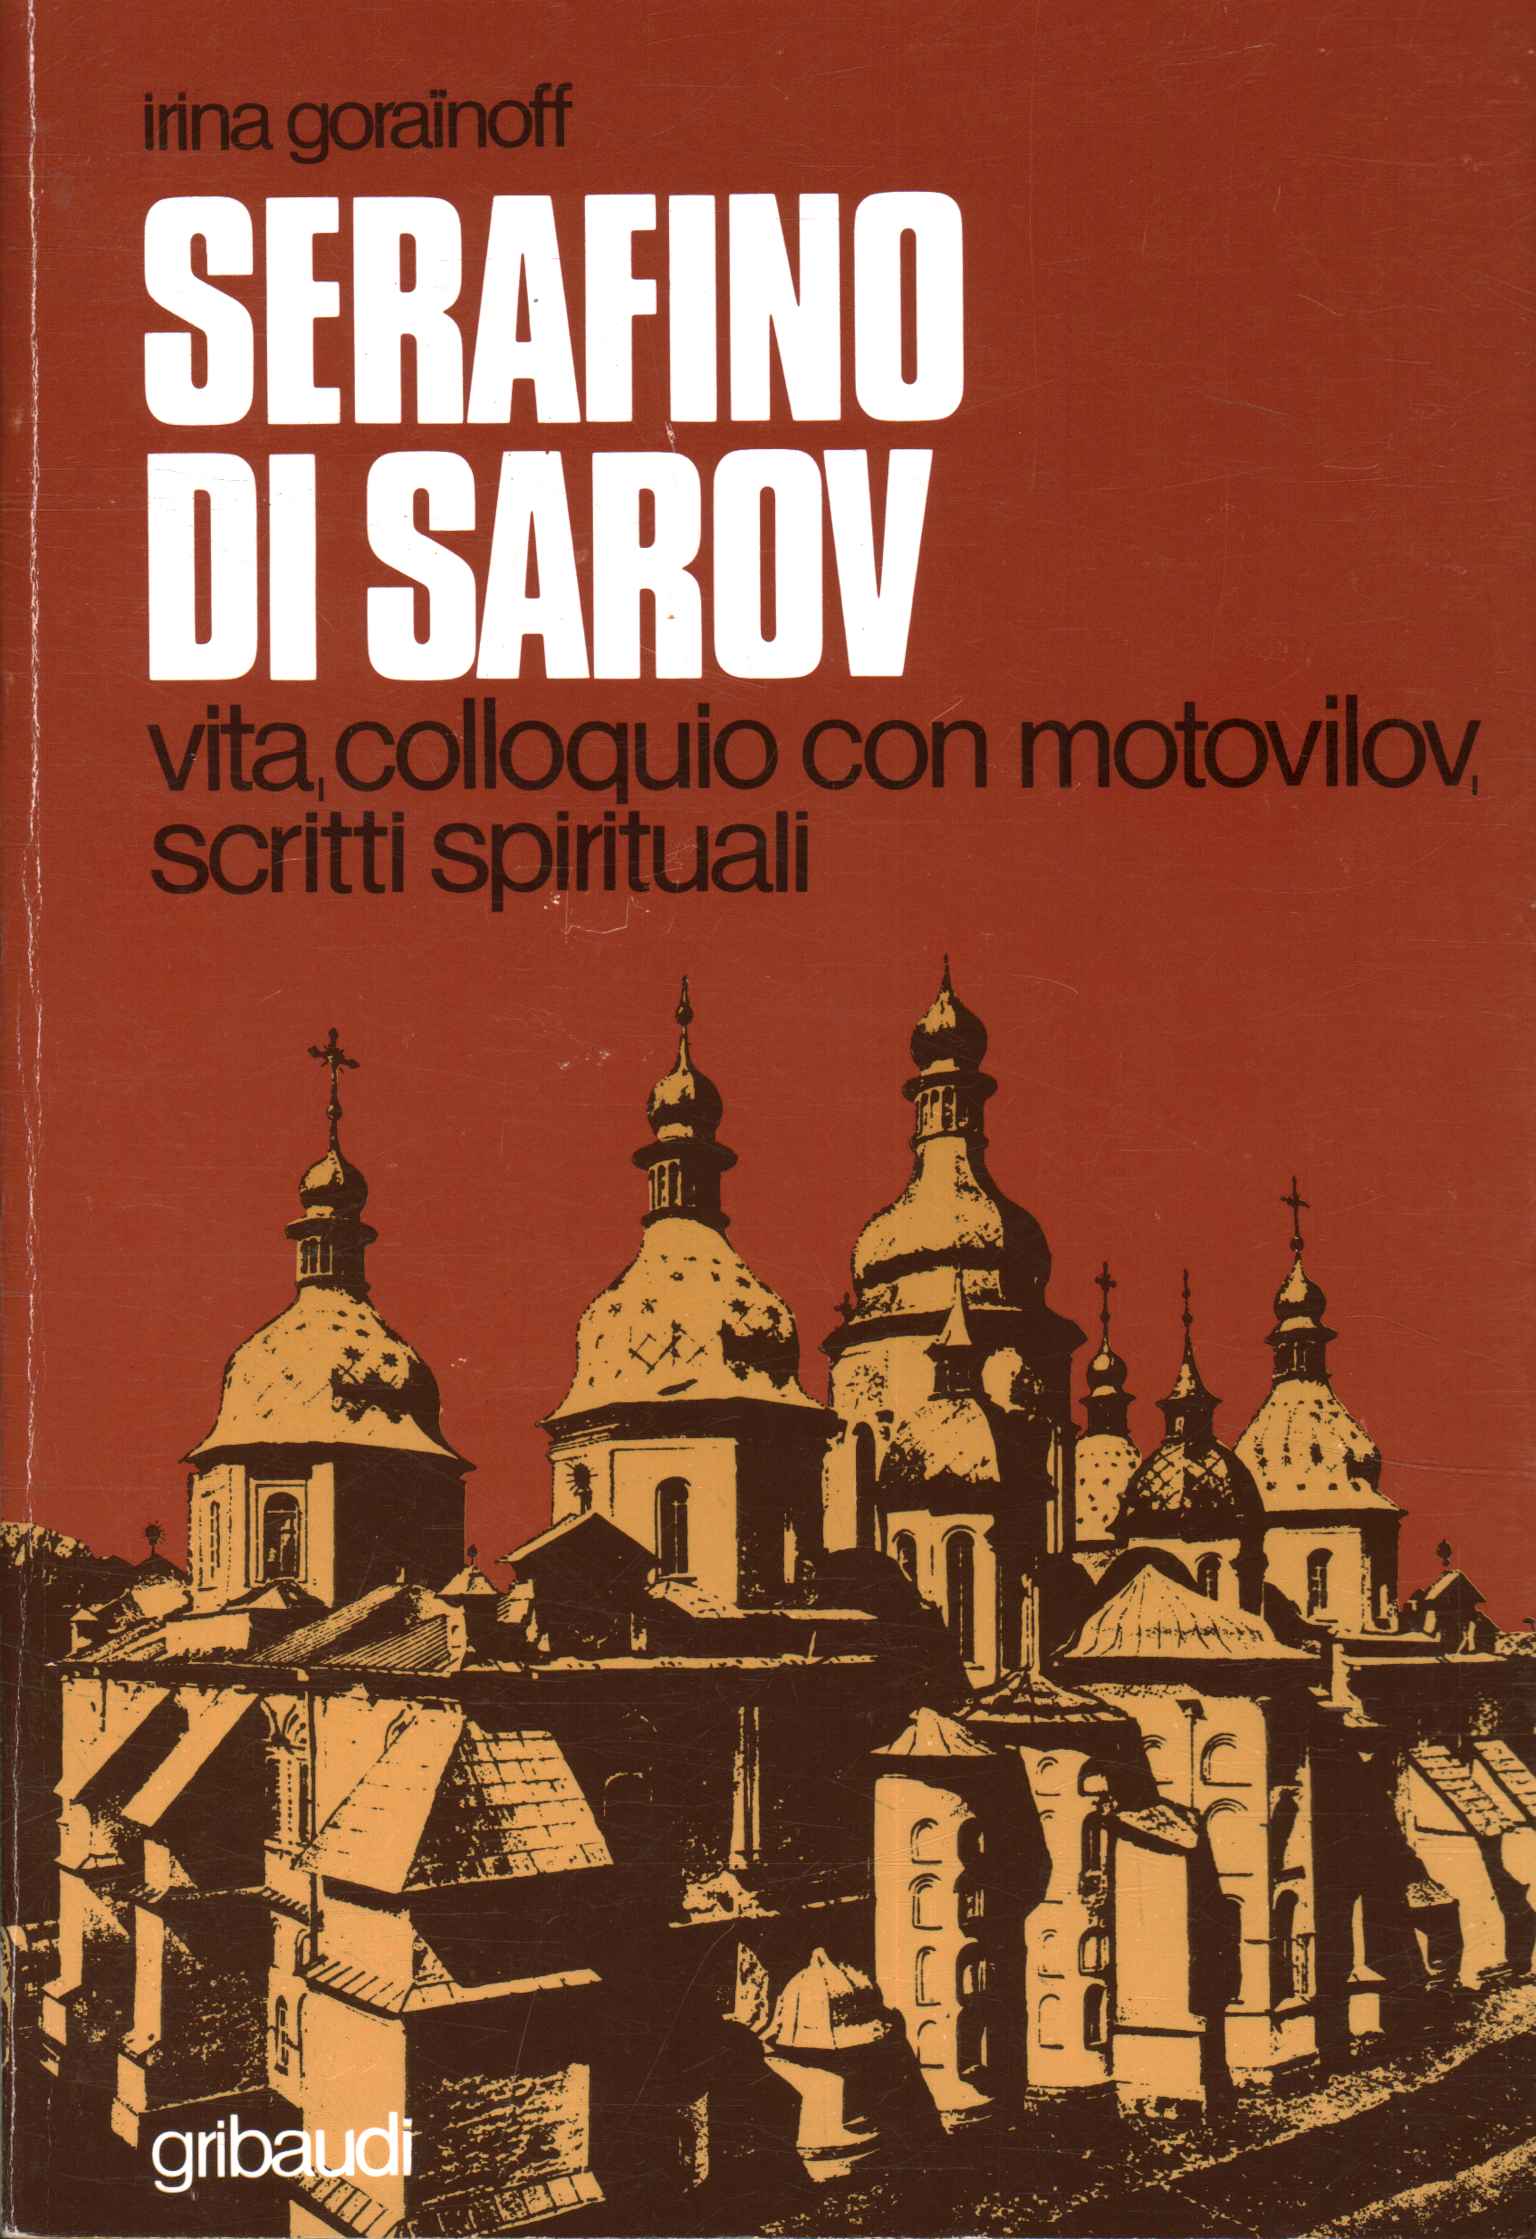 Seraph von Sarow